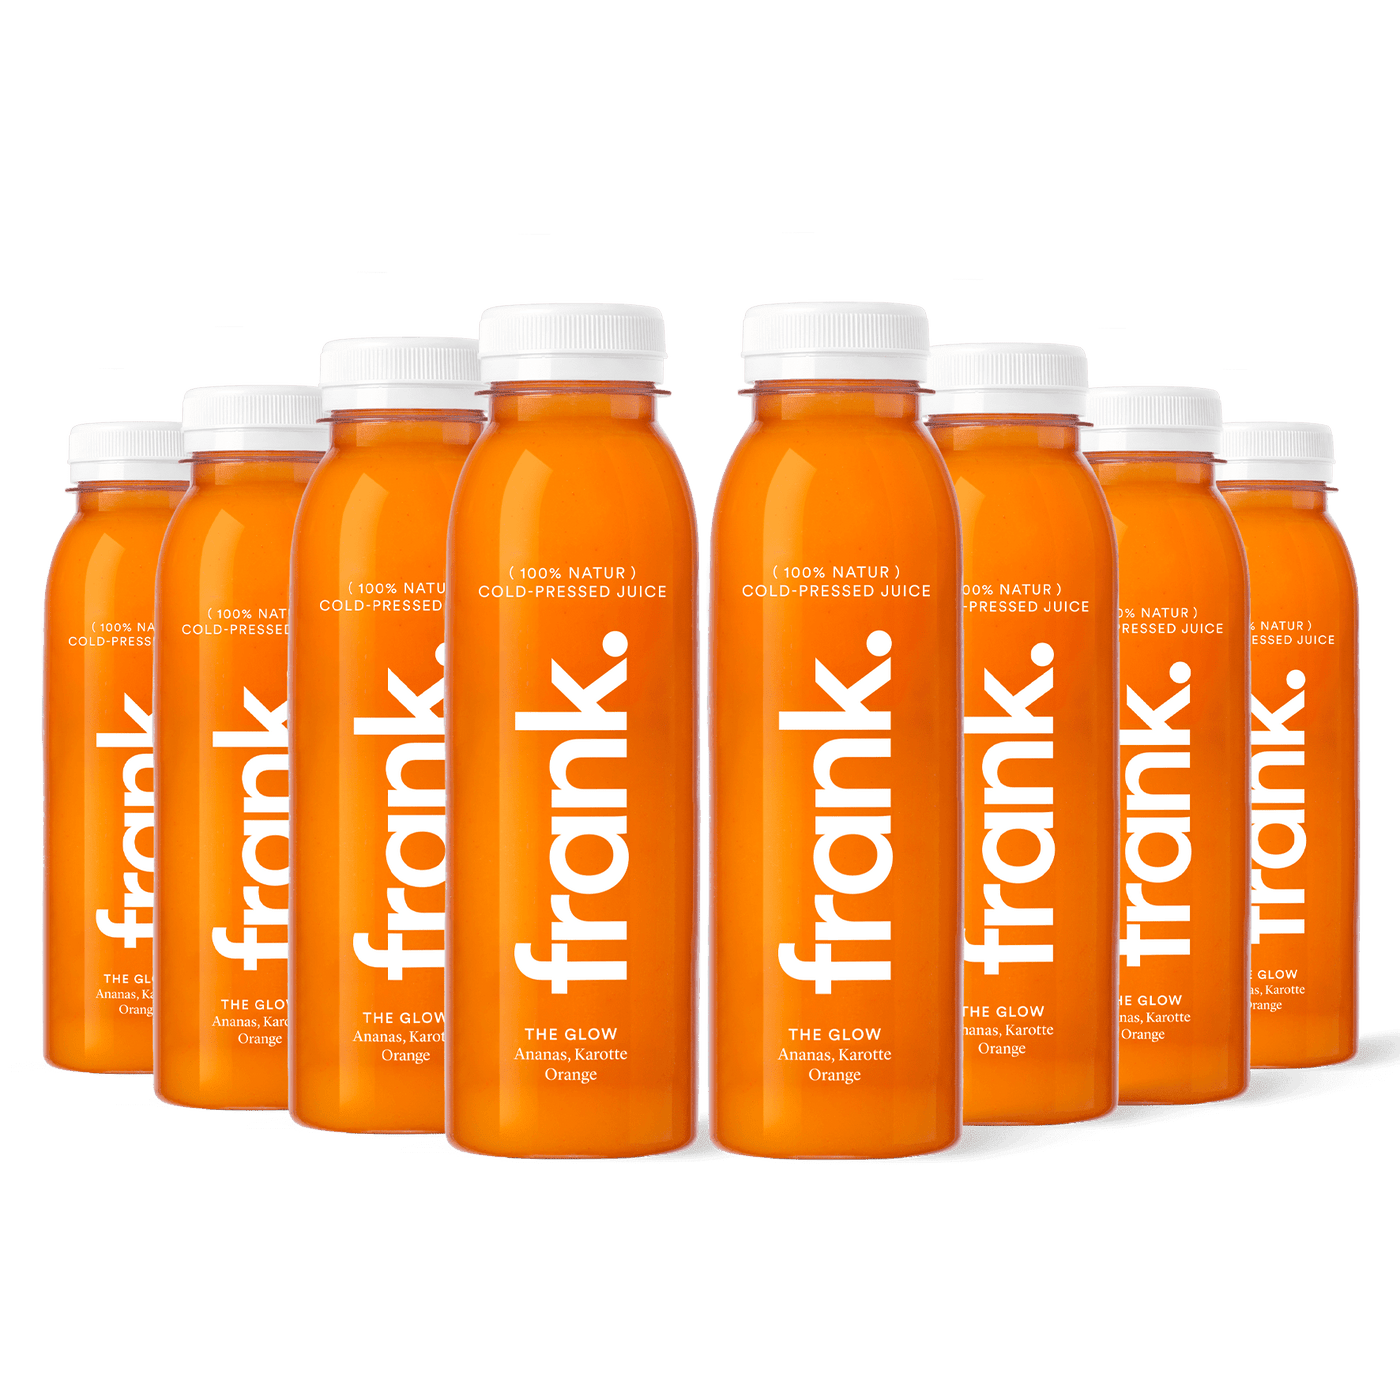 Darstellung der Juice-Box The Glow mit Ananas, Karotte und Orange bestehend aus 8 Säften von frank